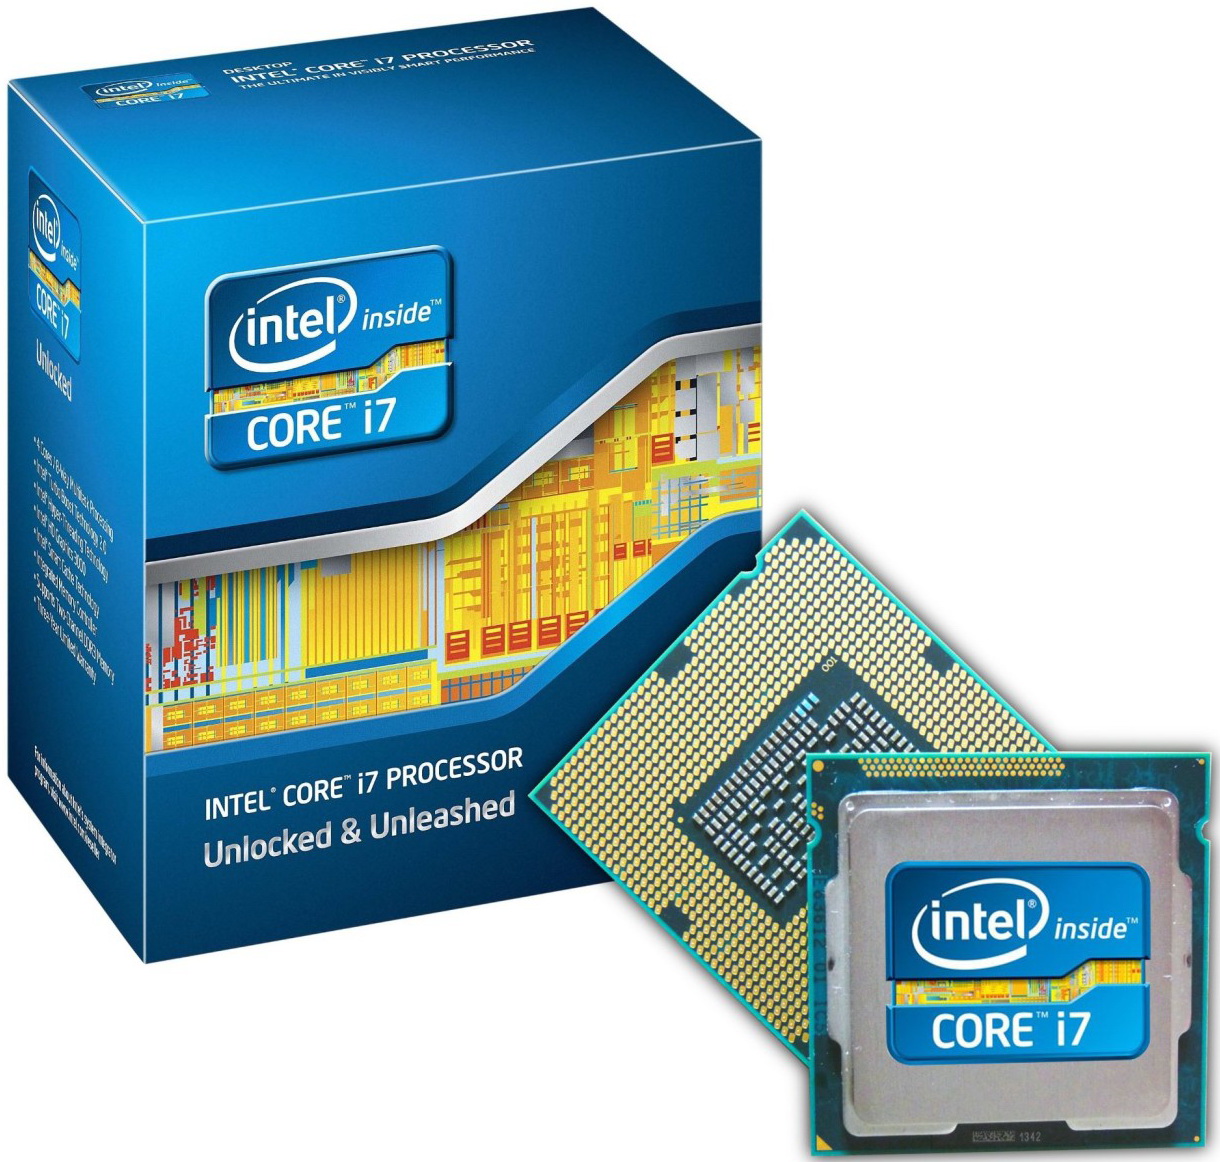 Интел i7 3770. Процессор Intel Core i7-3770. Intel Core i7 LGA 1155. Core i7 2600k. Intel Core i7-2600k Sandy Bridge lga1155, 4 x 3400 МГЦ.